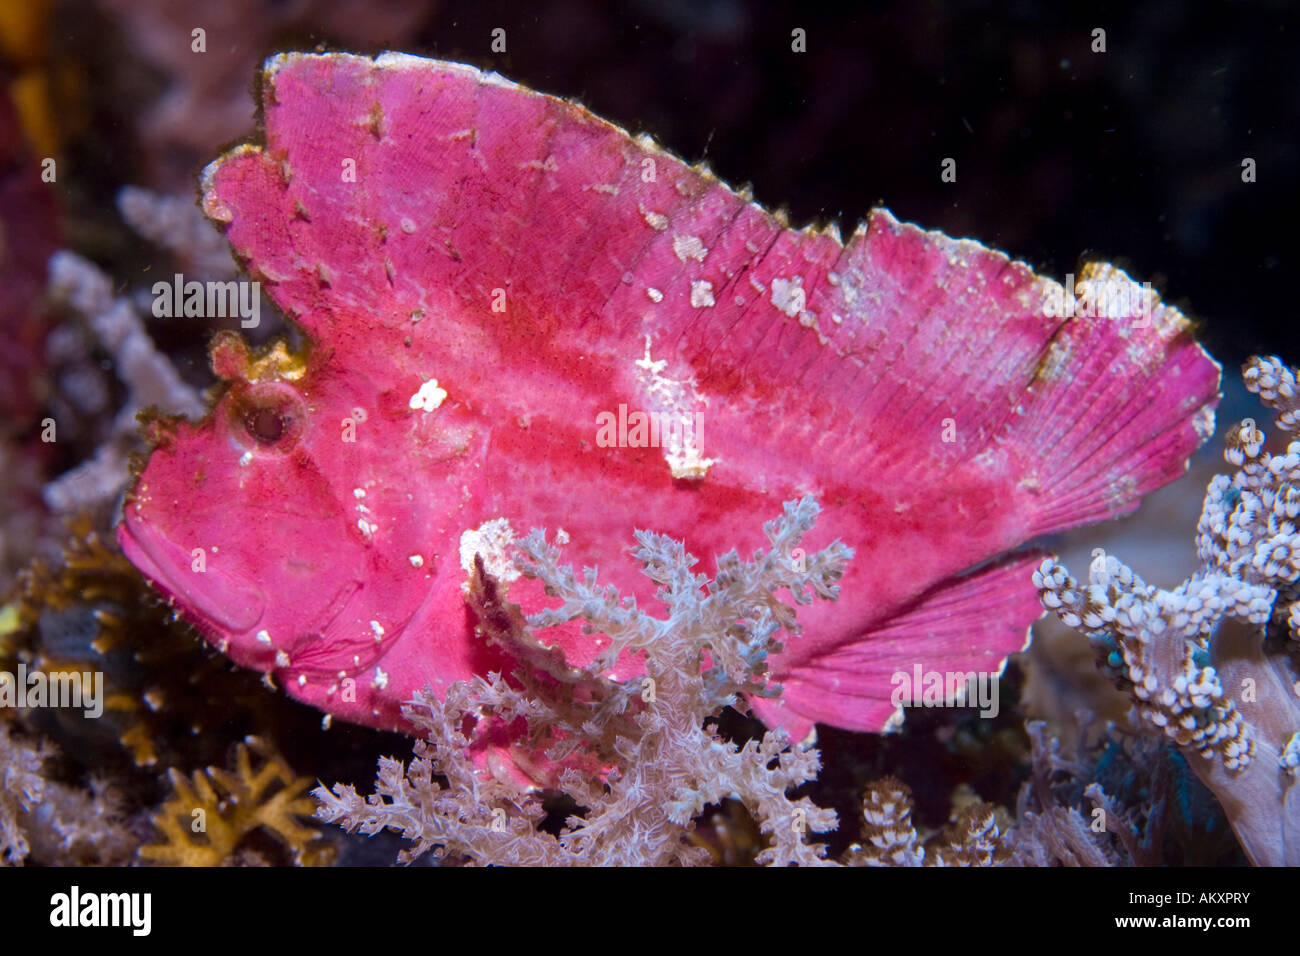 Leaf scorpionfish or Paper Fish (Taenianotus triacanthus). Stock Photo